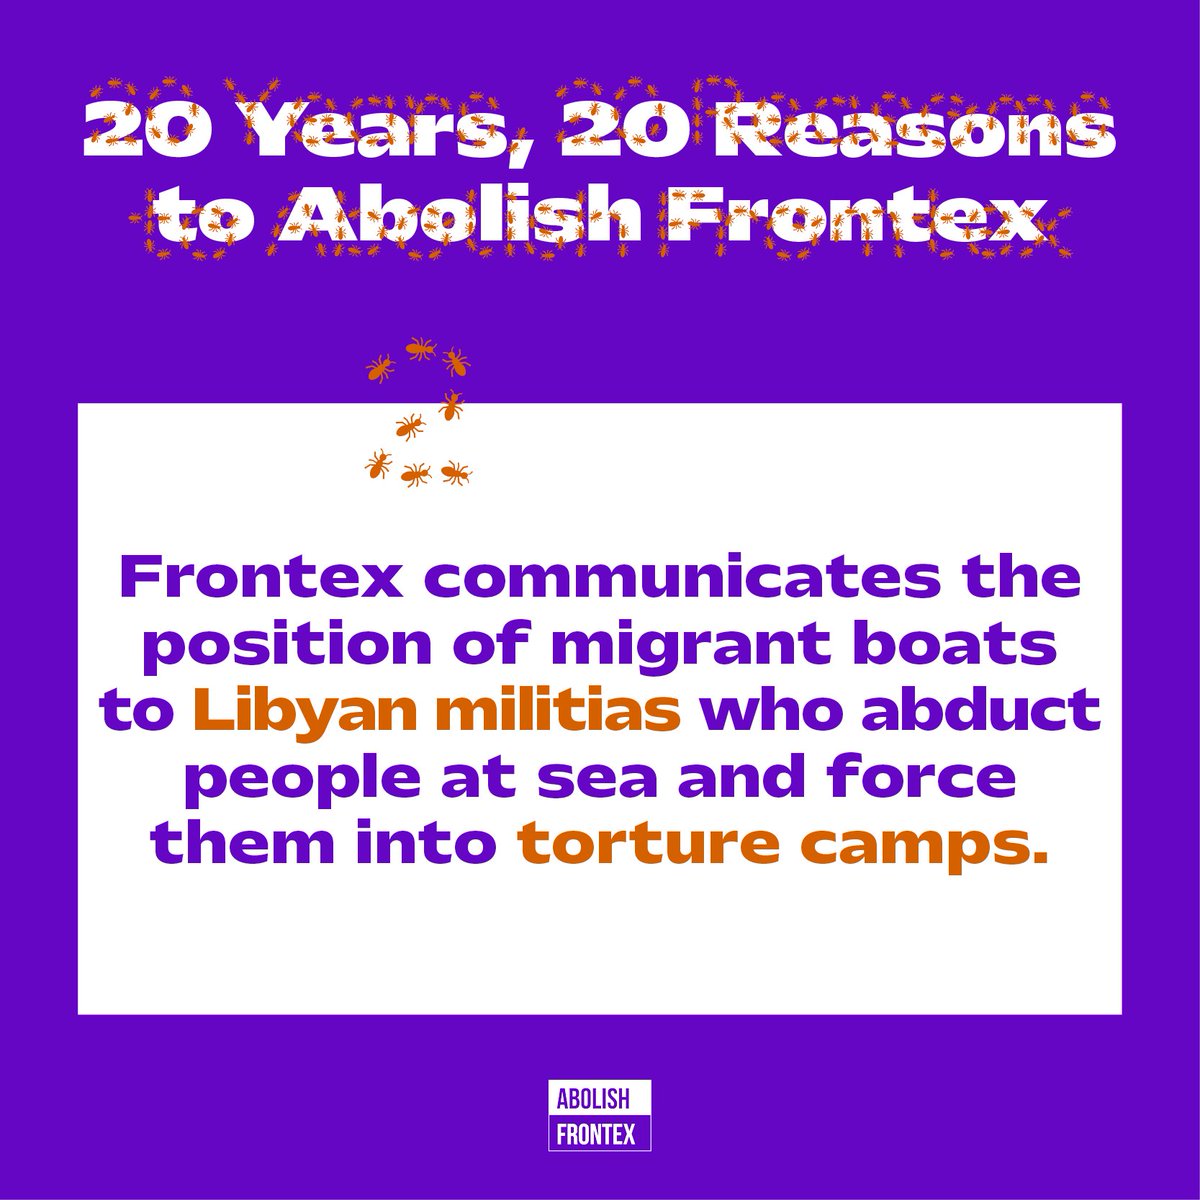 ✊ 20 years, 20 reasons to #AbolishFrontex